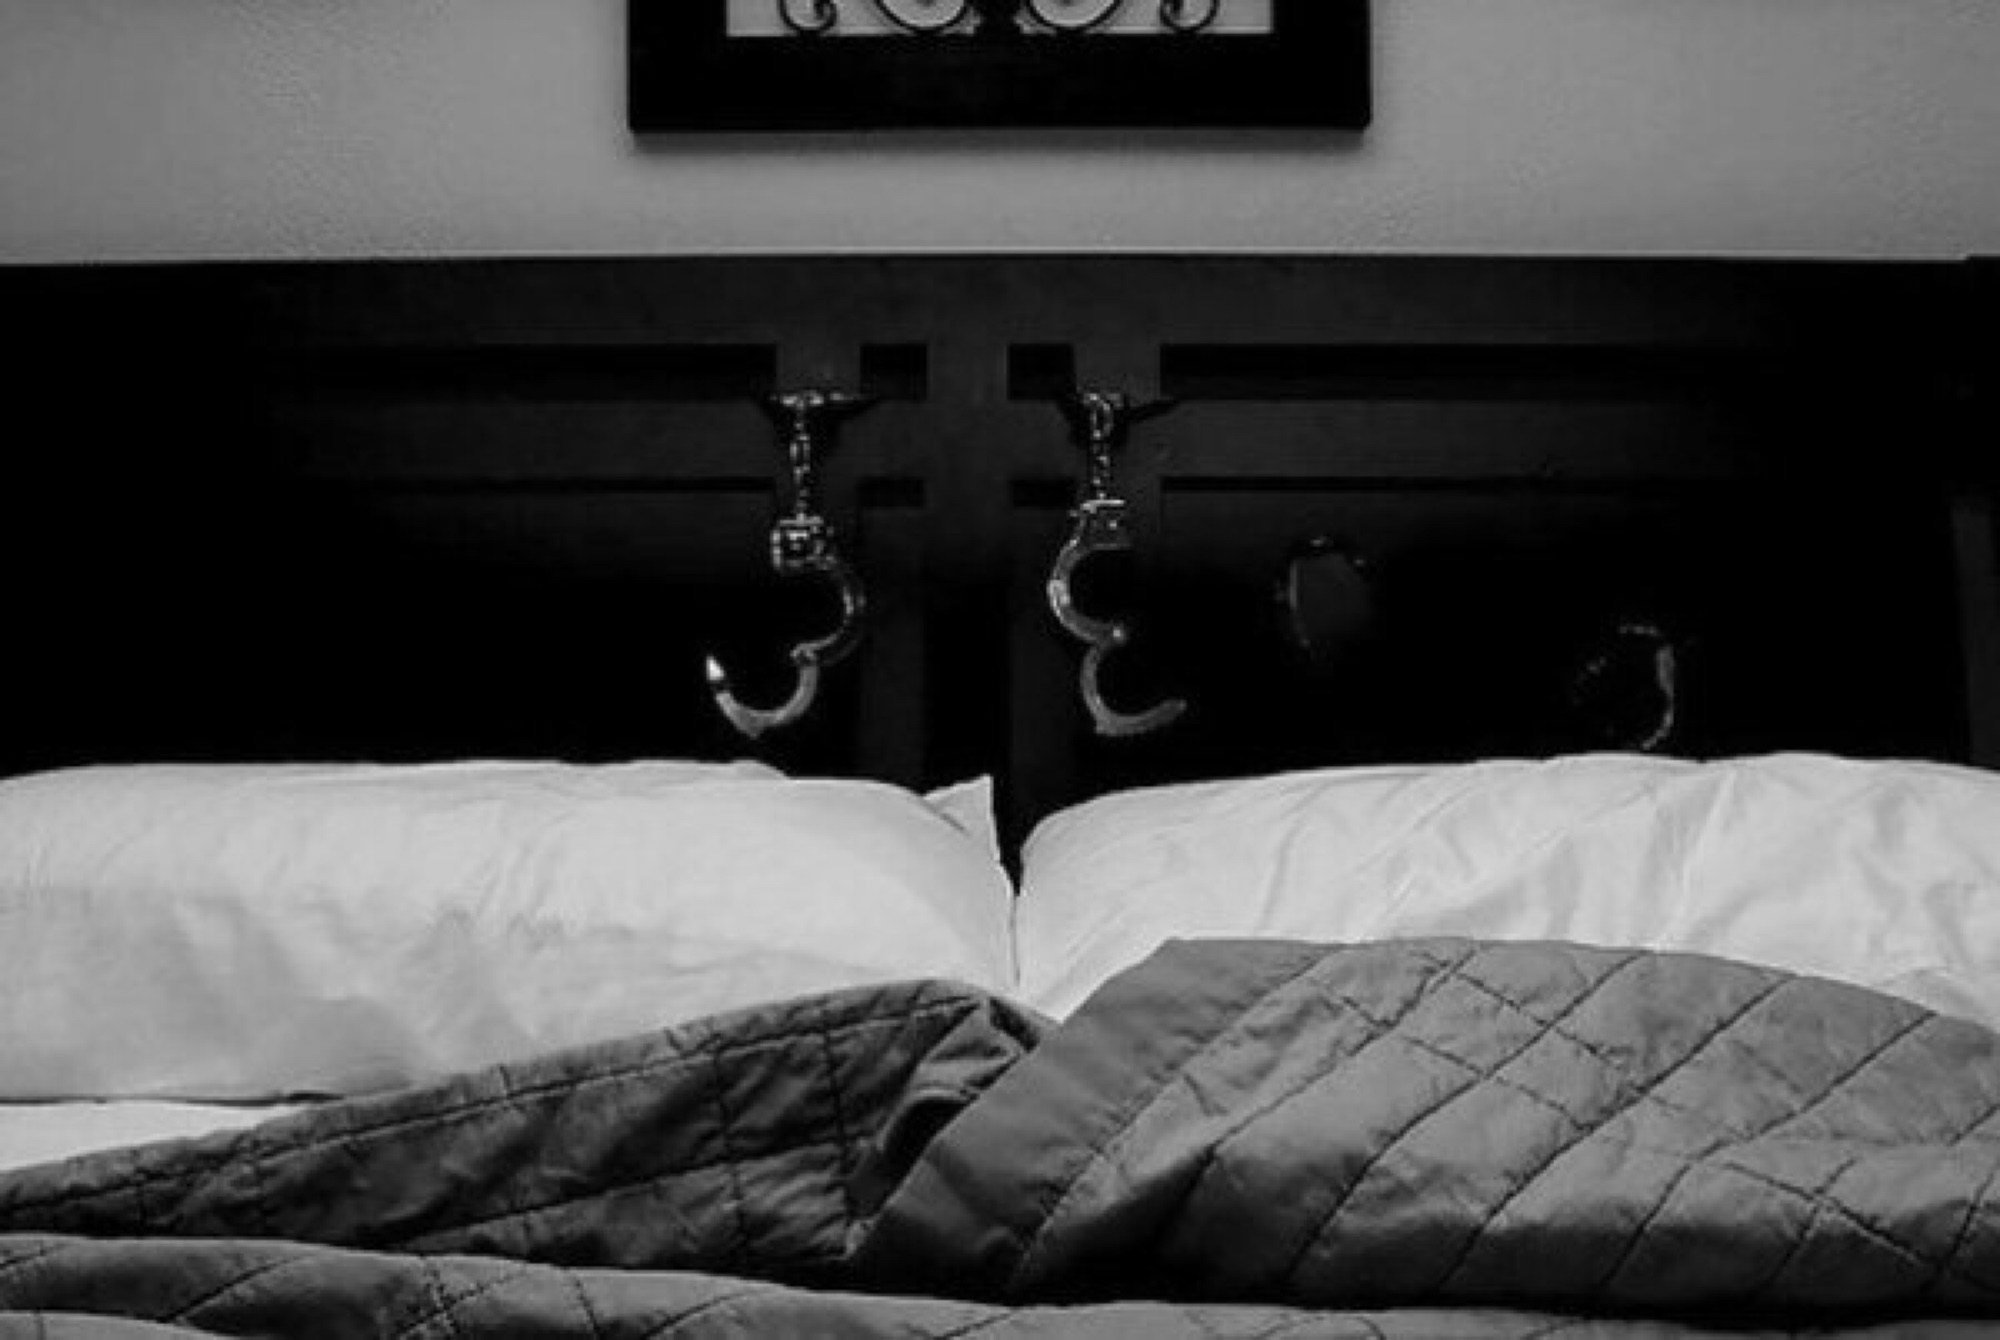 Фото связанные женщины на кровати фото